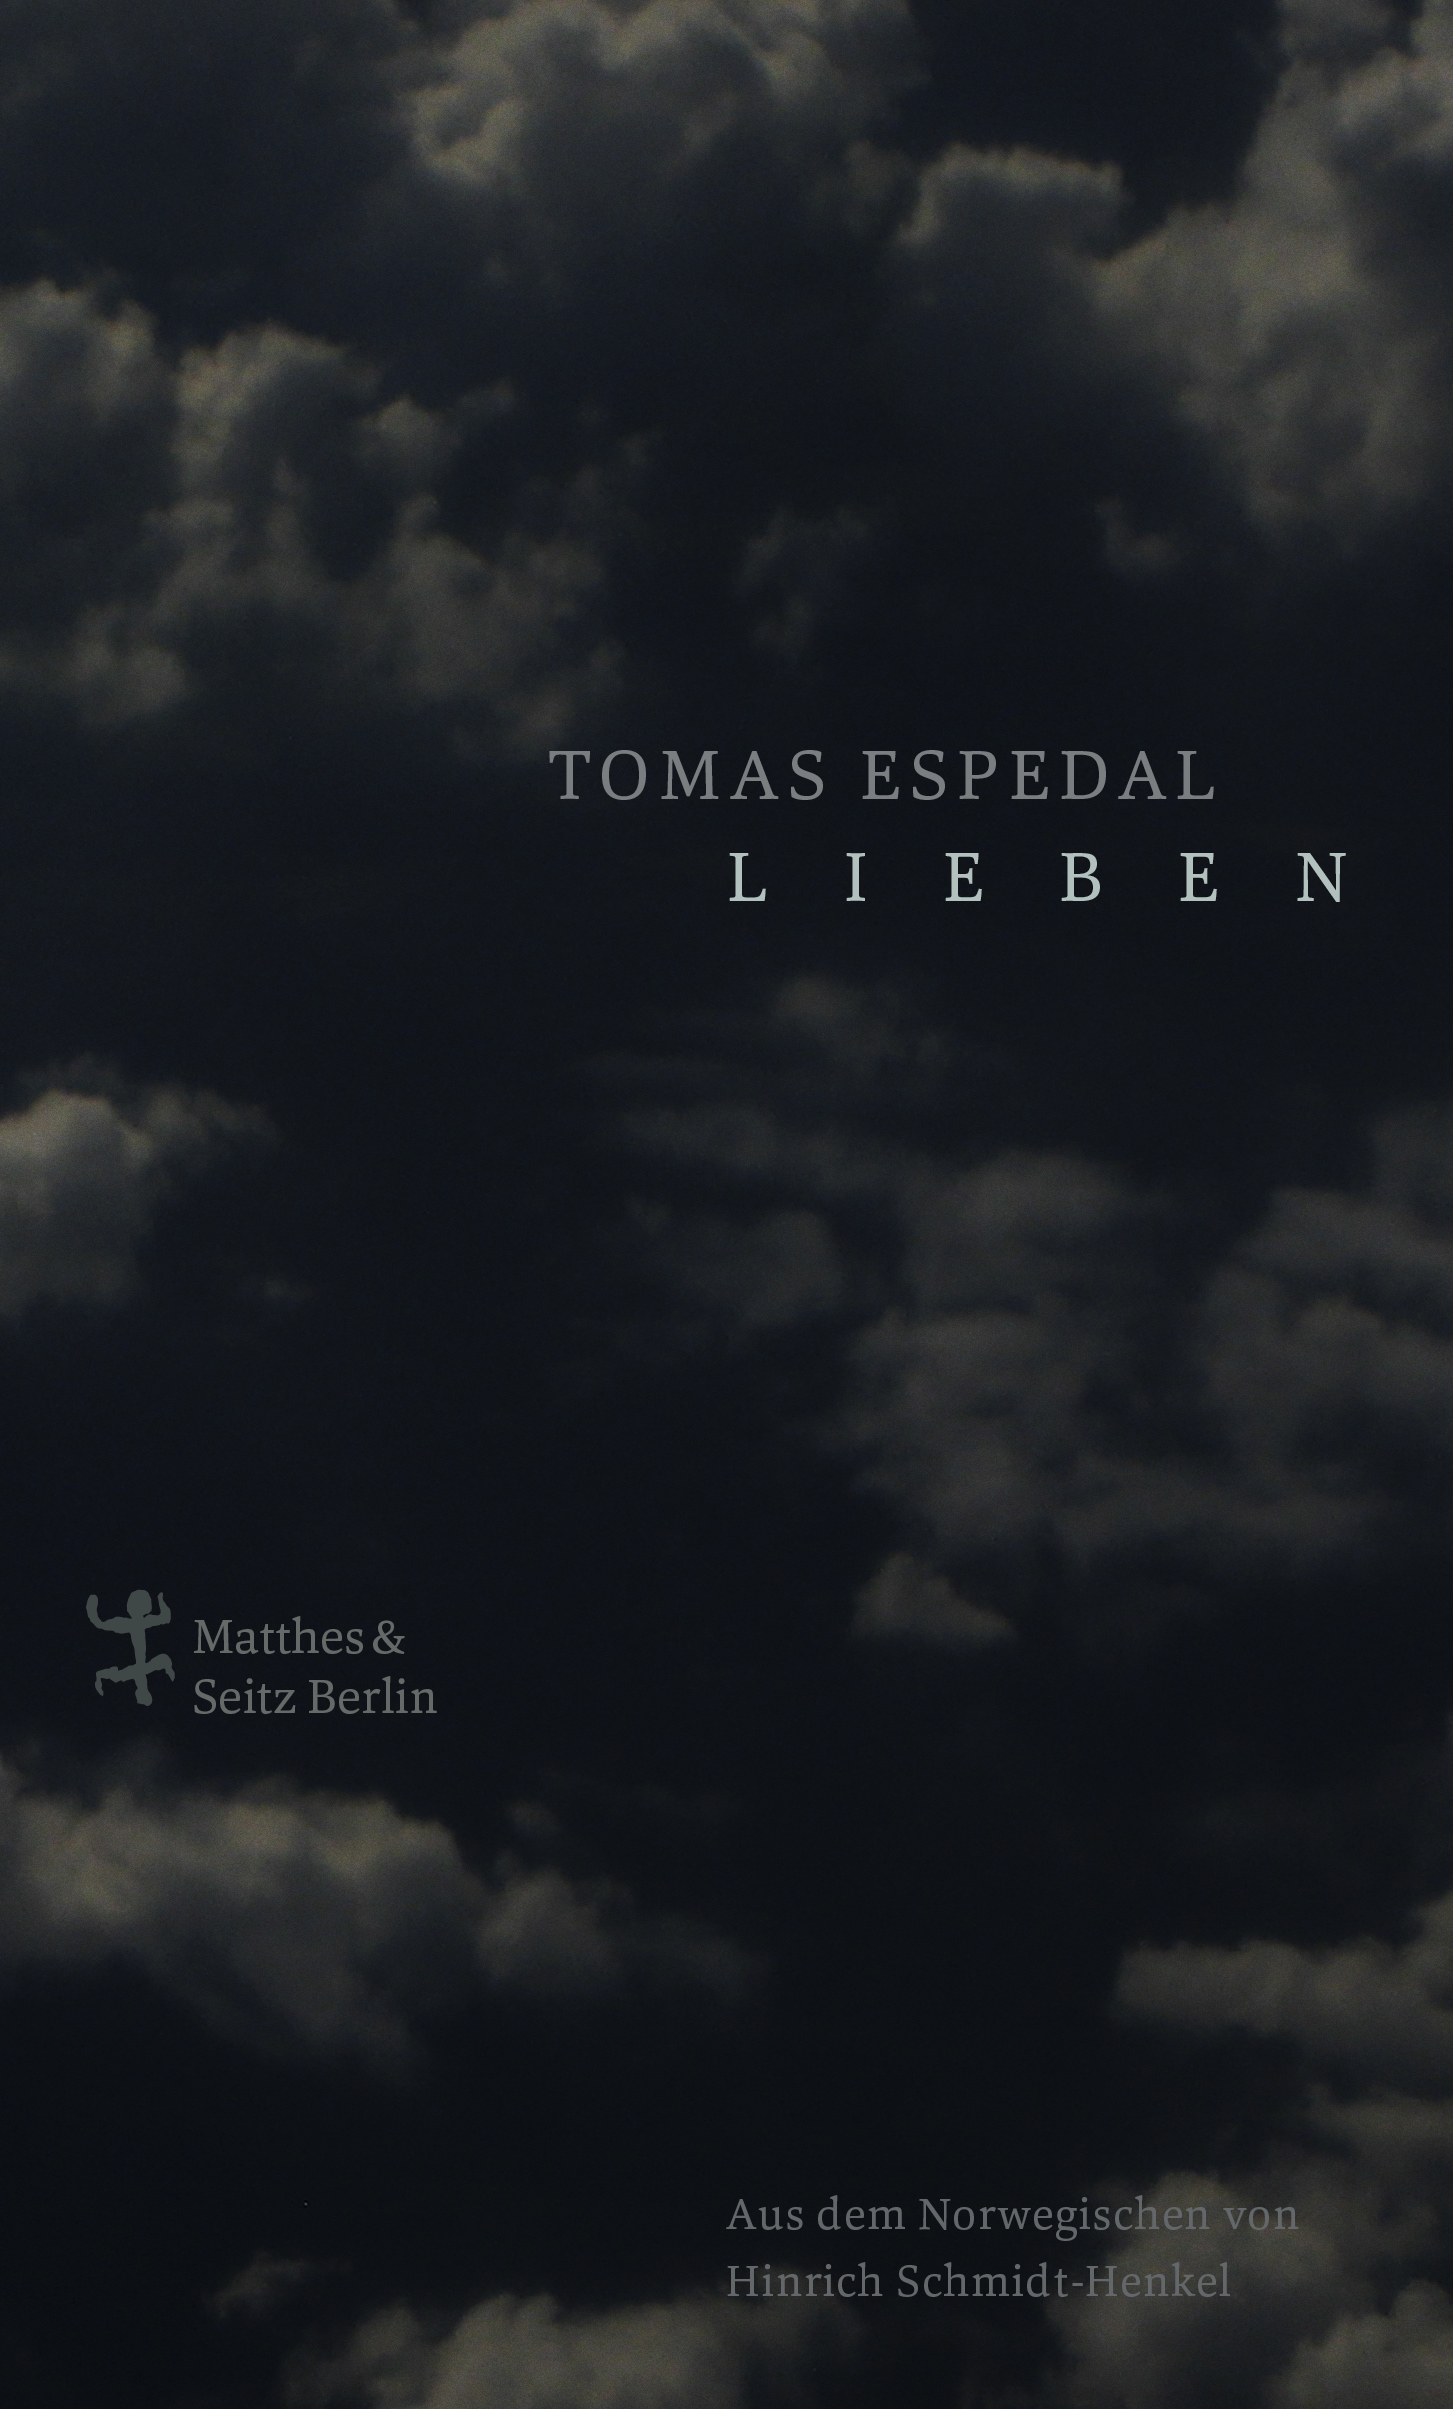 Cover von Tomas Espedals Roman "Lieben"